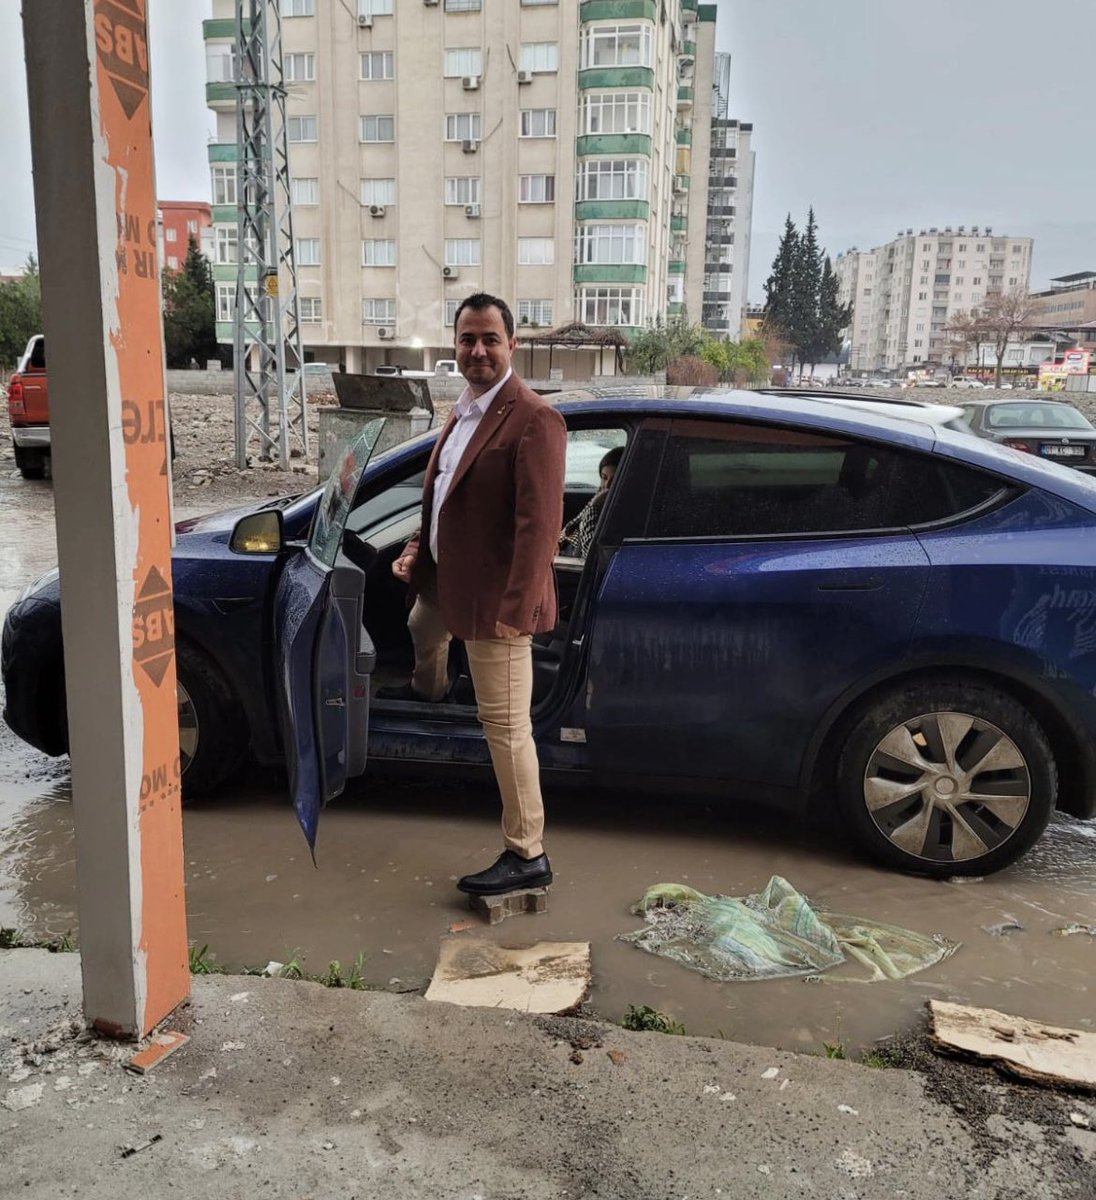 Zafer Partisi Osmaniye Belediye Başkan adayı Ahmet Atakan Ertuğ, belediyenin altyapı çalışmalarını şu sözlerle tiye aldı: “Her şeyi devletten beklemeyin. Ufak bir yağmurda yollar nehir; şehir venedik oluyorsa 1 adet parke taşıyla arabanıza ulaşabilirsiniz.😃” @atakanertug